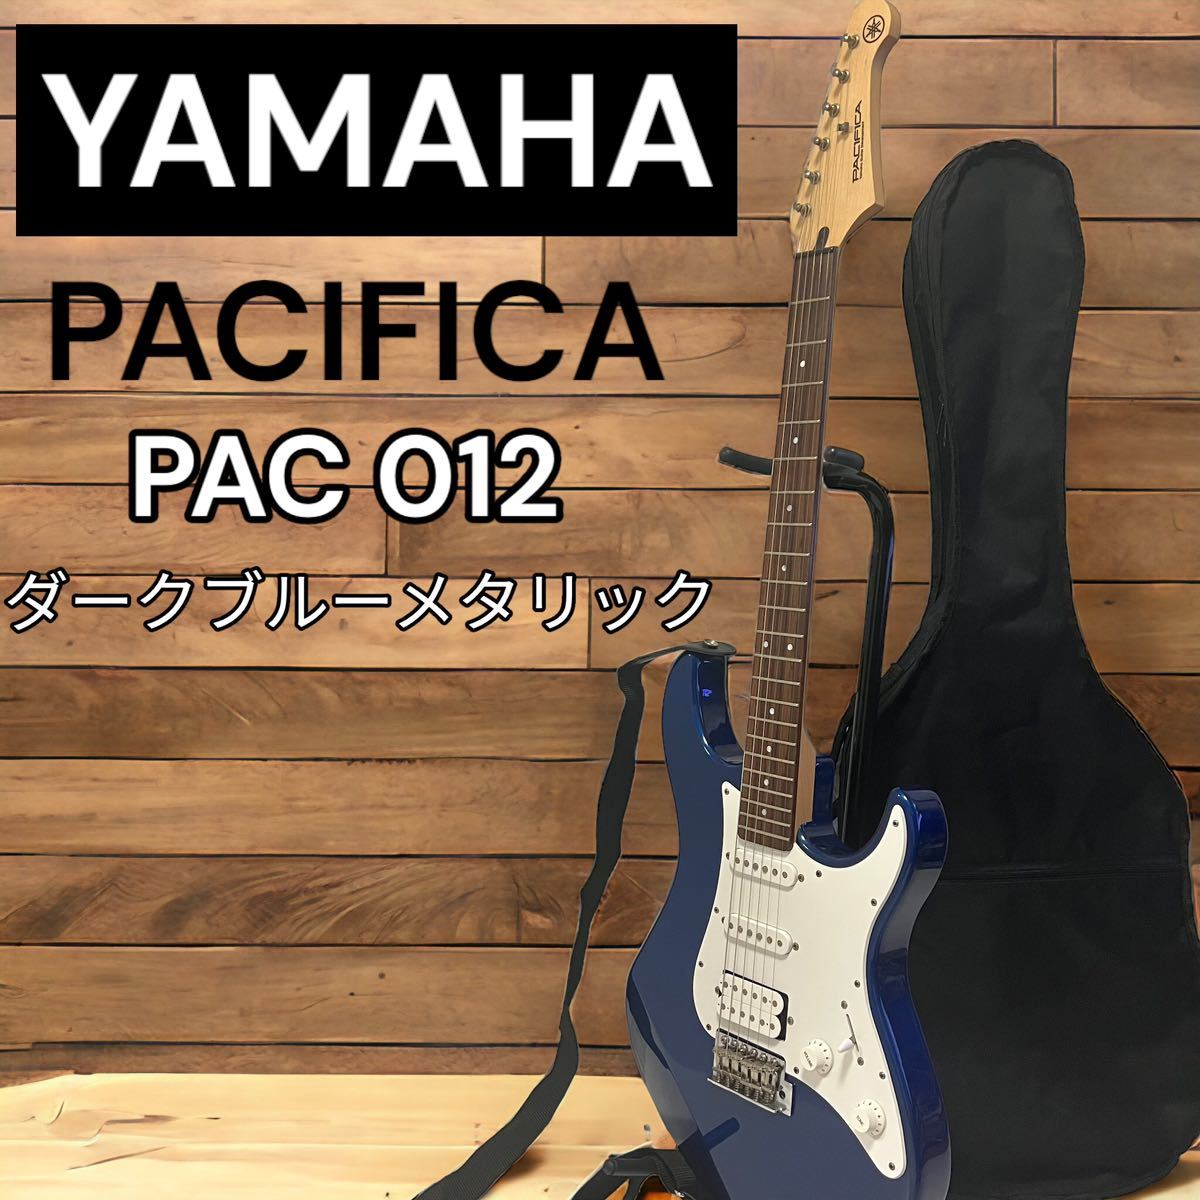 美品 YAMAHA ヤマハPACIFICA パシフィカ PAC012